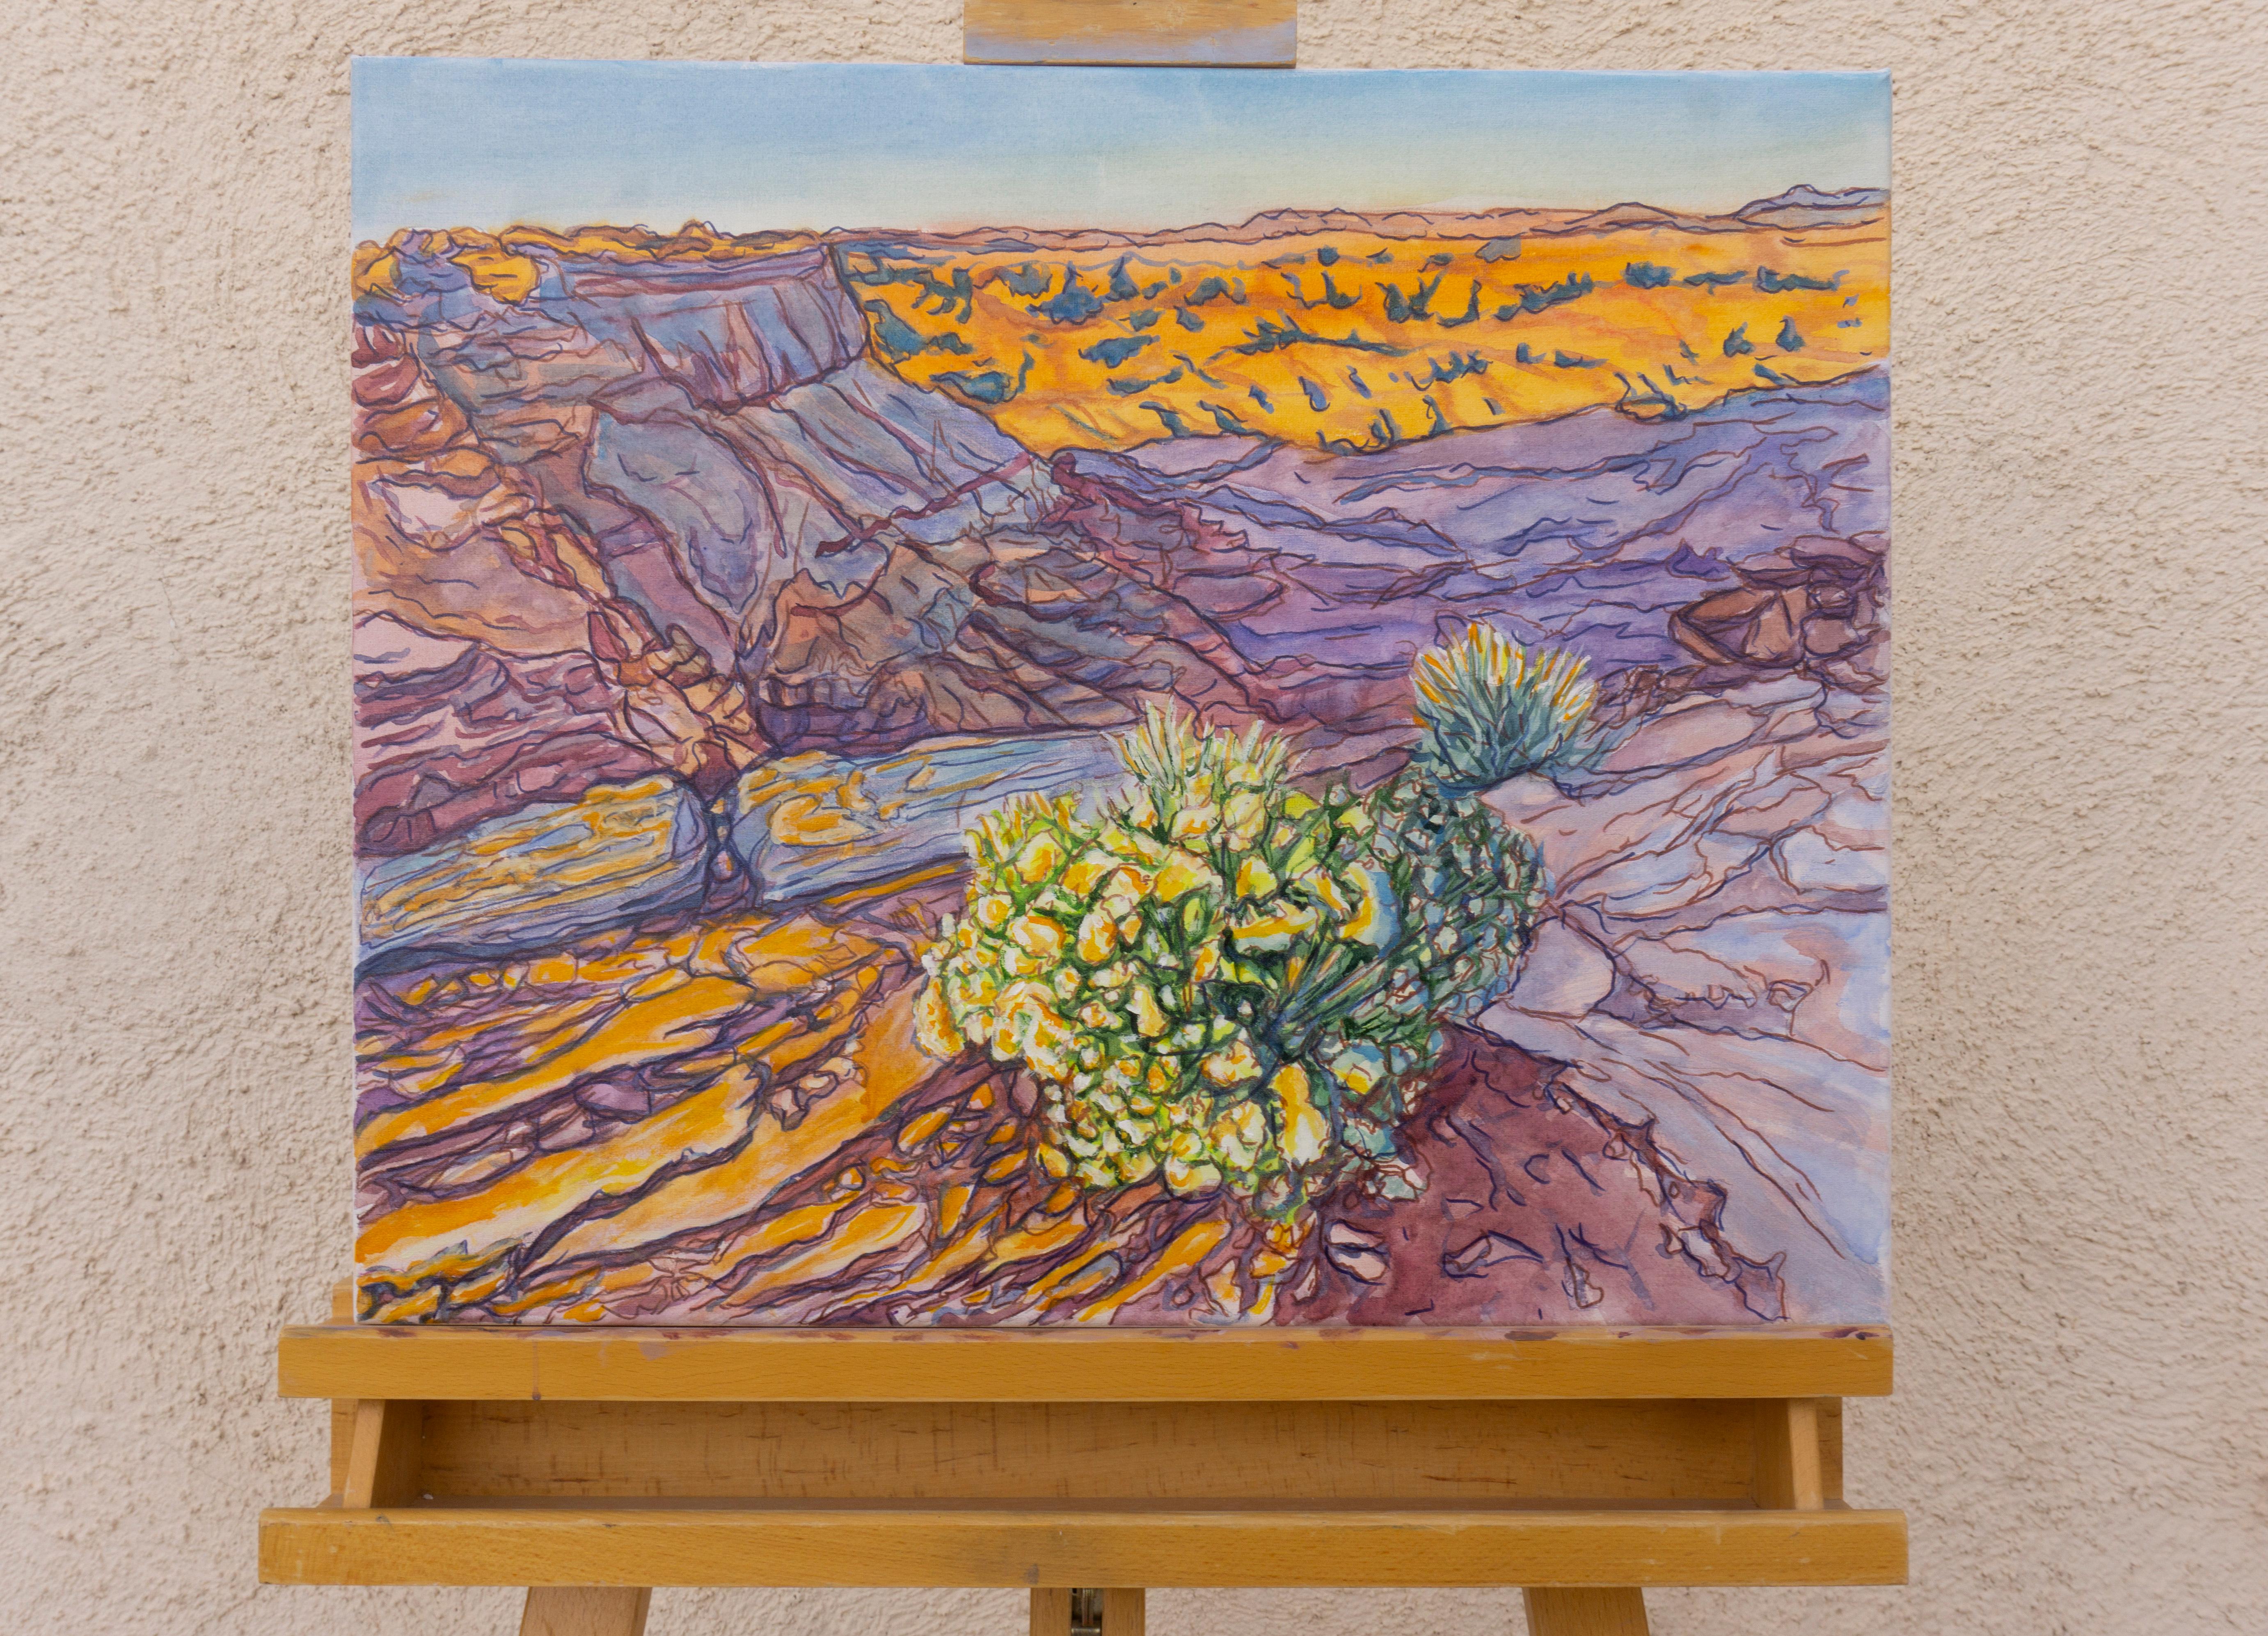 <p>Kommentare des KünstlersEine Morgenszene im Canyonlands-Nationalpark in Utah entfaltet sich.<br> Die aufgehende Sonne erhellt die Landschaft und wirft violette Schatten auf die Klippen, in denen wunderschöne Wildblumen blühen. Die Verwendung von